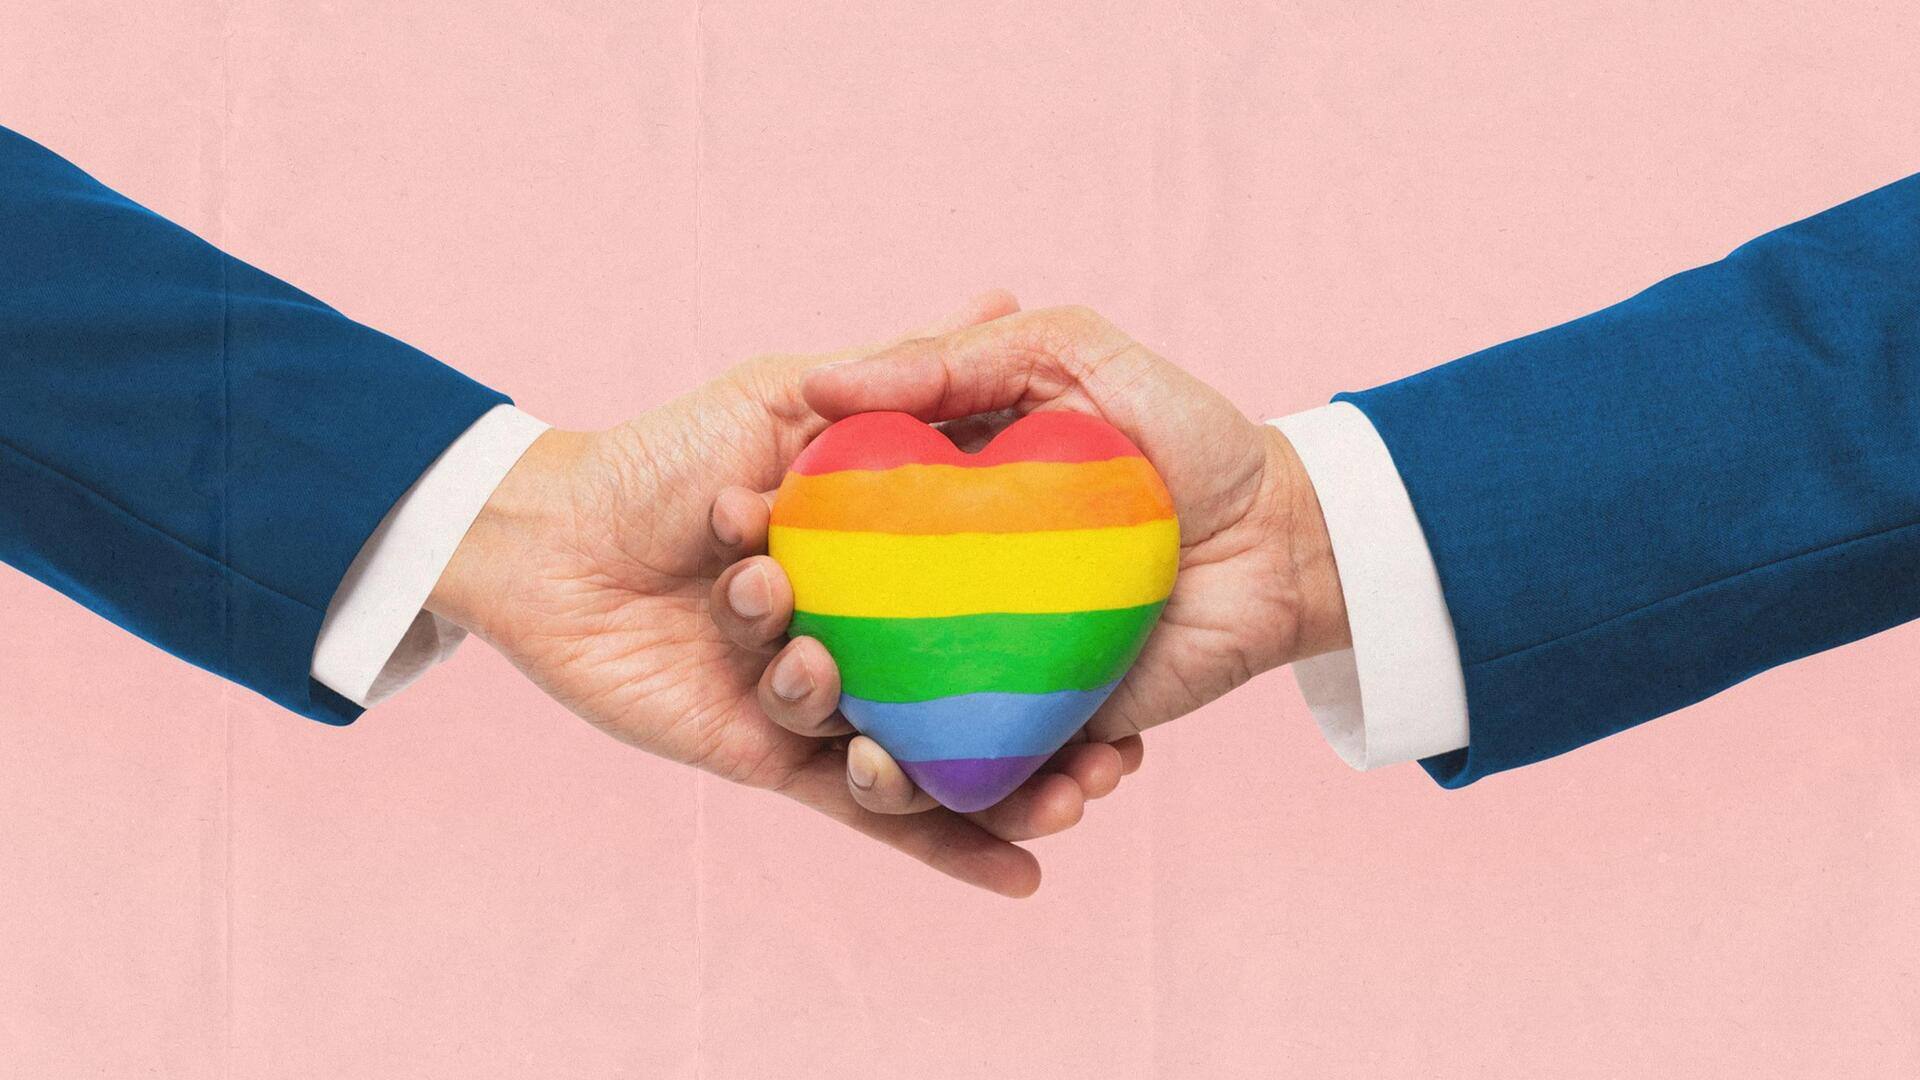 समलैंगिक जोड़ों की सामाजिक जरूरतों को देखने के लिए कमेटी बनाने पर राजी हुई केंद्र सरकार